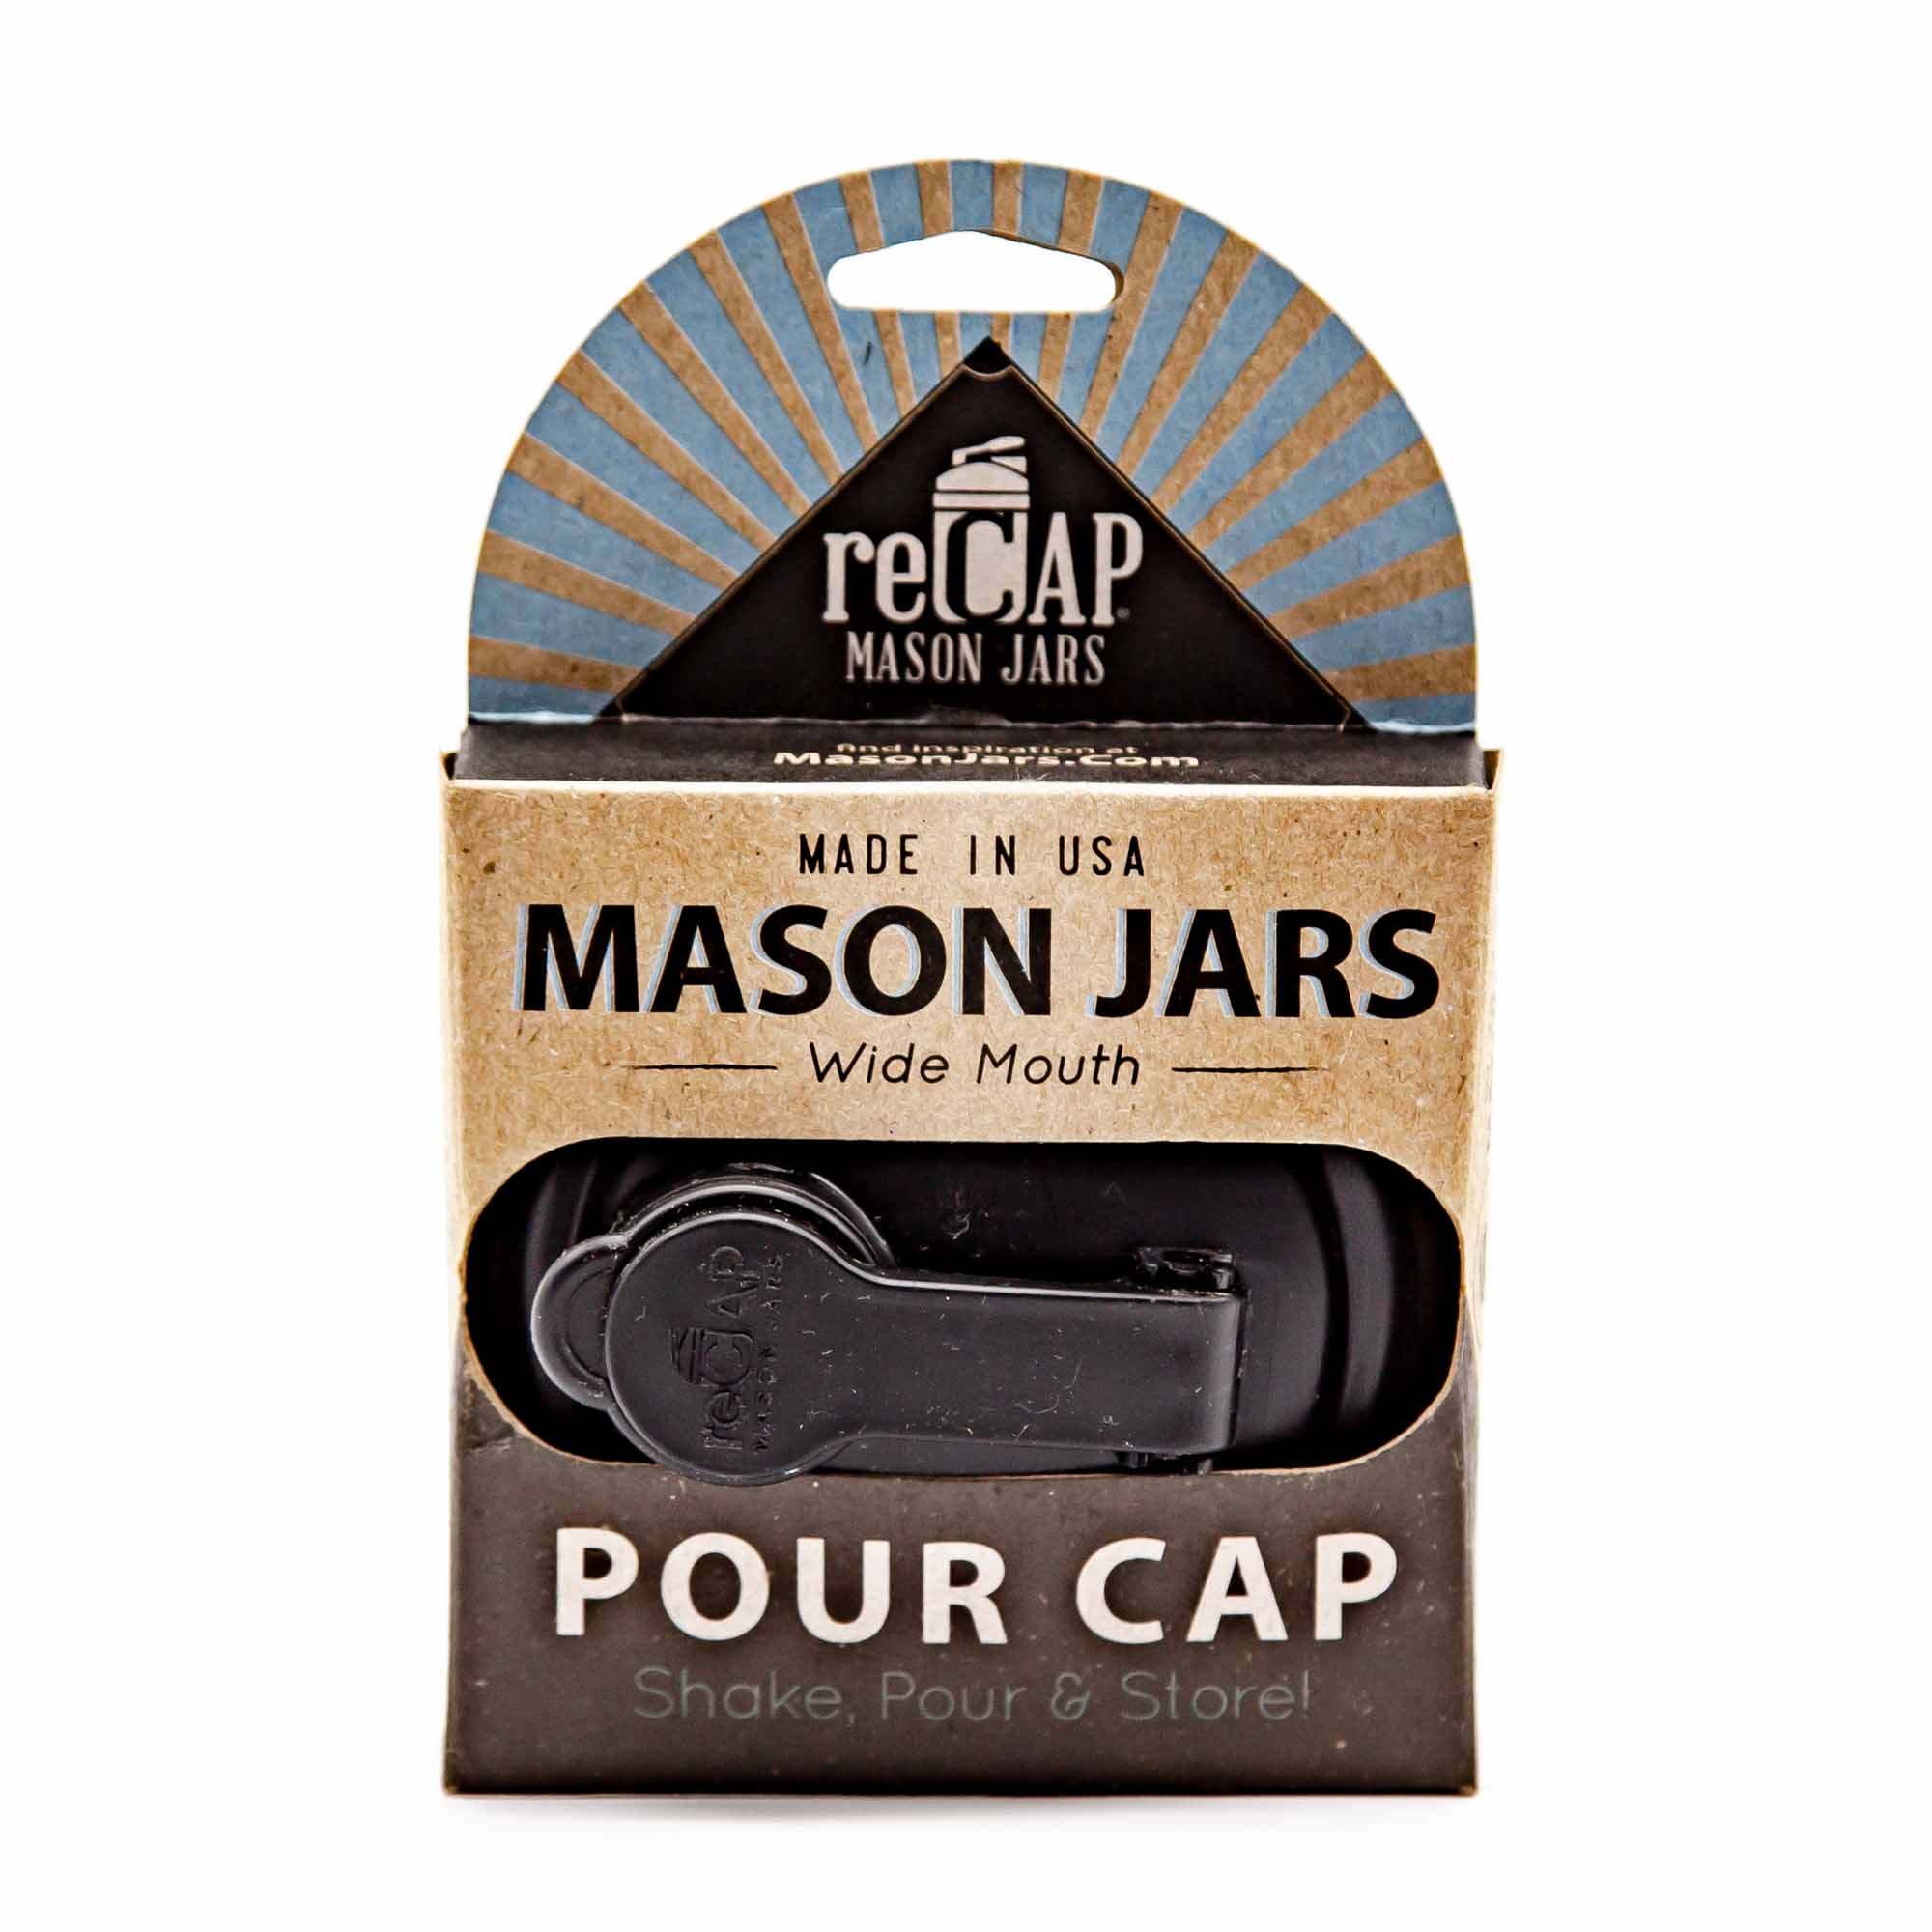 recap Mason Jar Drink/Pour Cap - Mortise And Tenon